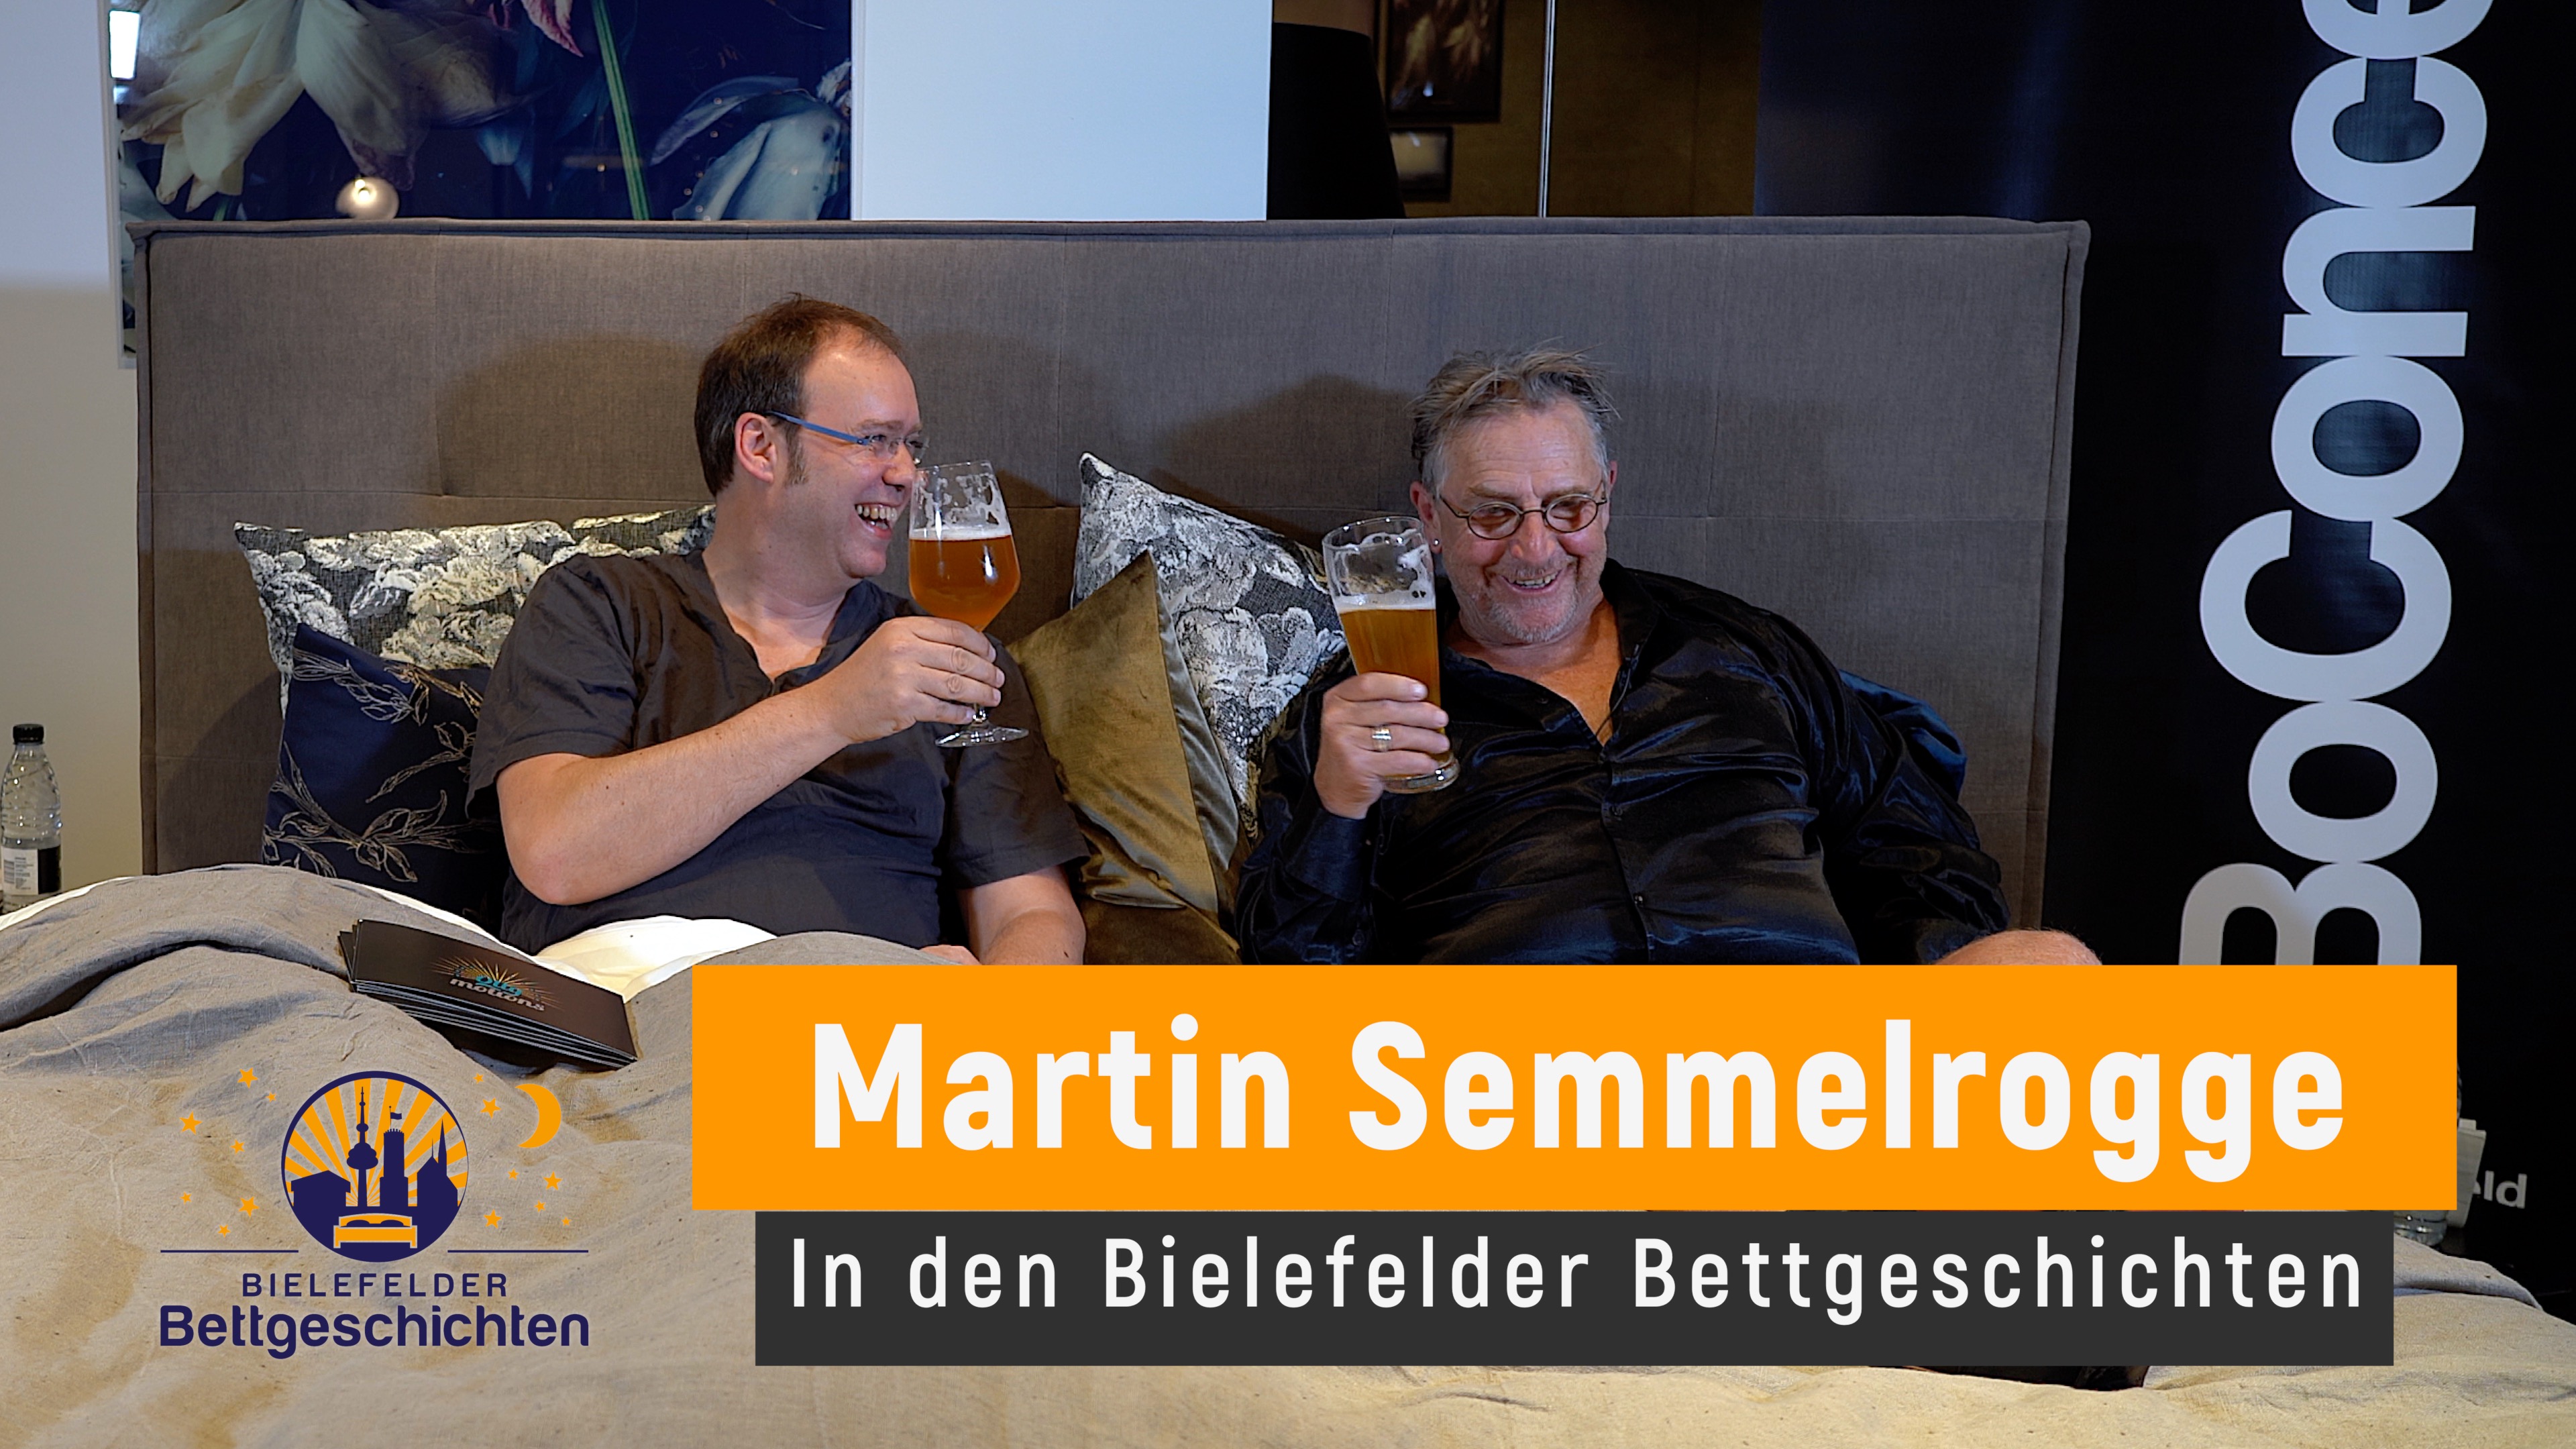 Martin Semmelrogge rappt, singt, tanzt und erzählt - Folge 24 der Bielefelder Bettgeschichten ist da!